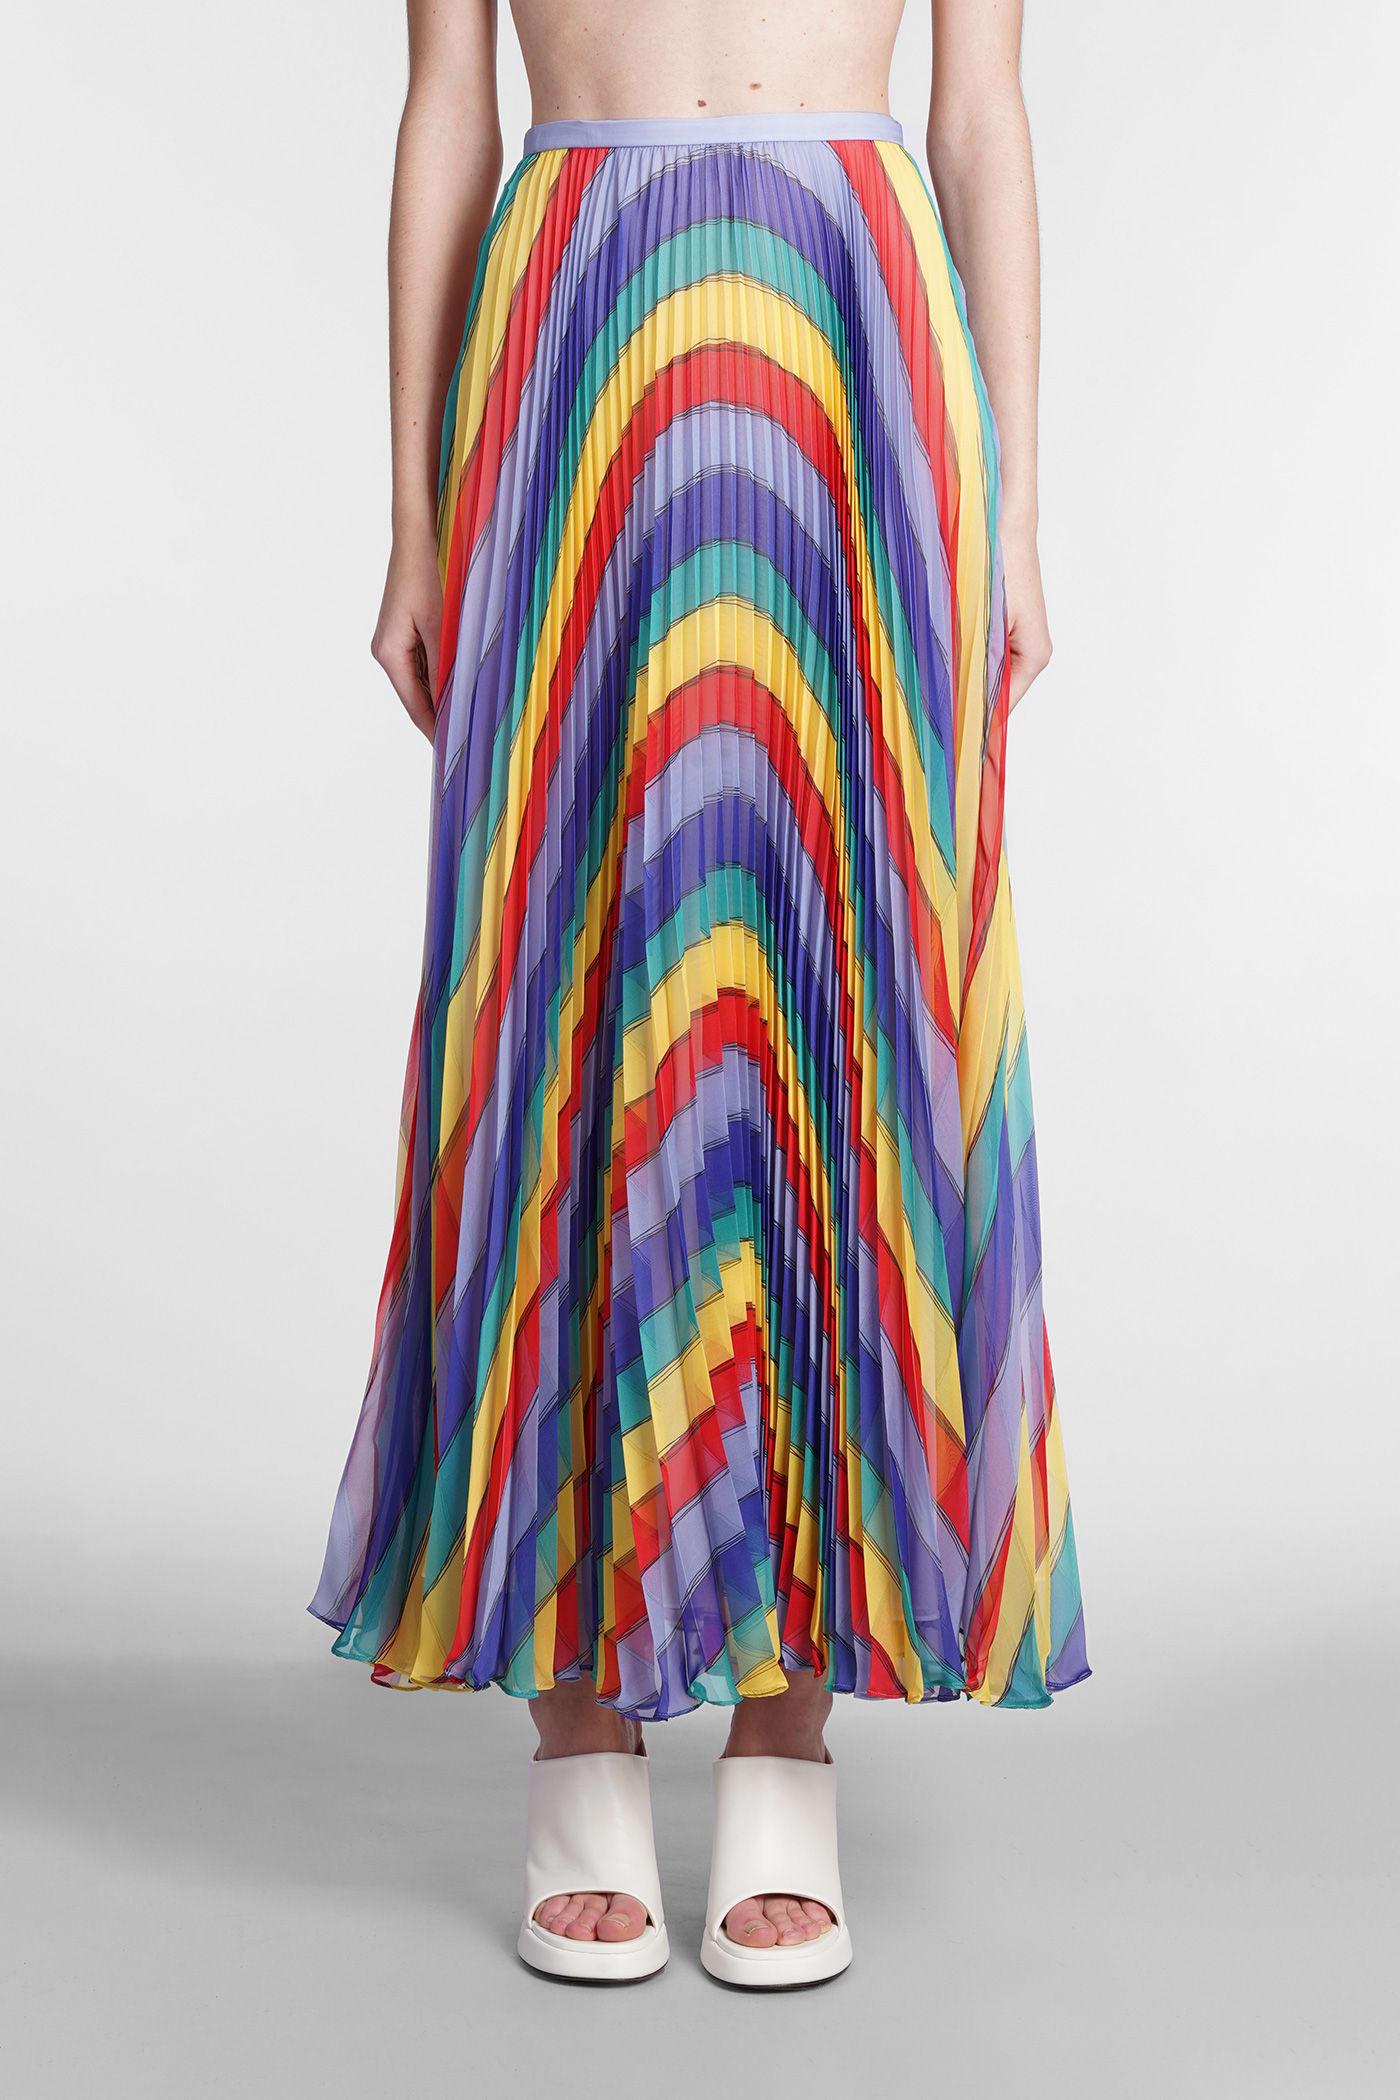 Rochas Skirt In Multicolor Polyester in White | Lyst UK